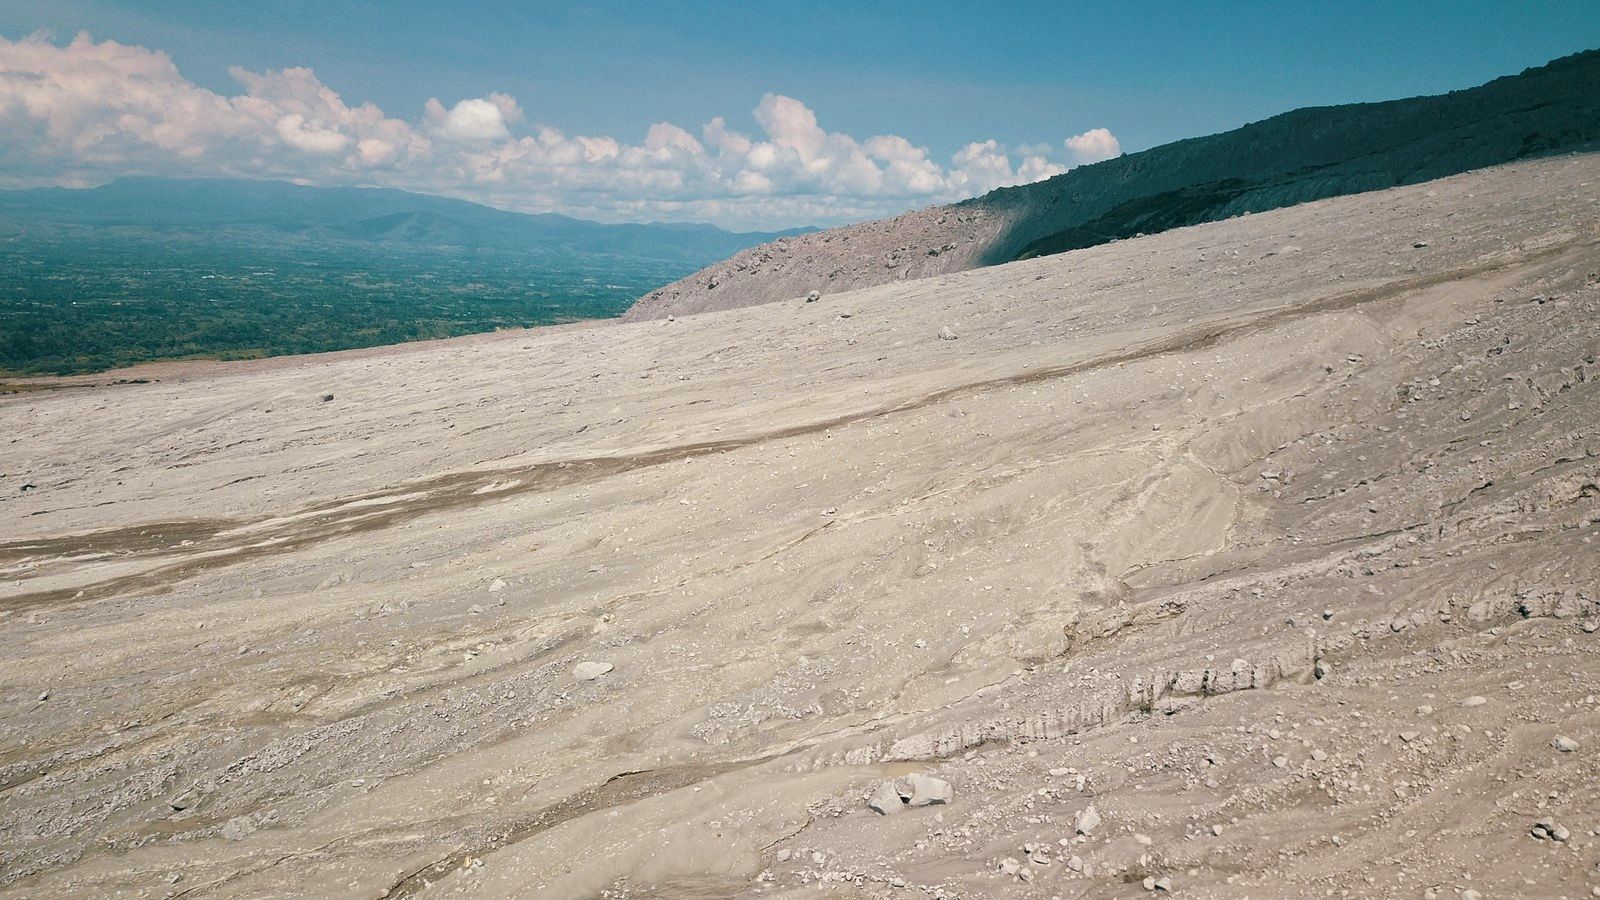  Sinabung - dépôts de coulées pyroclastiques sur le versant Est  - photo © Thierry SLUYS le 15.07.2019